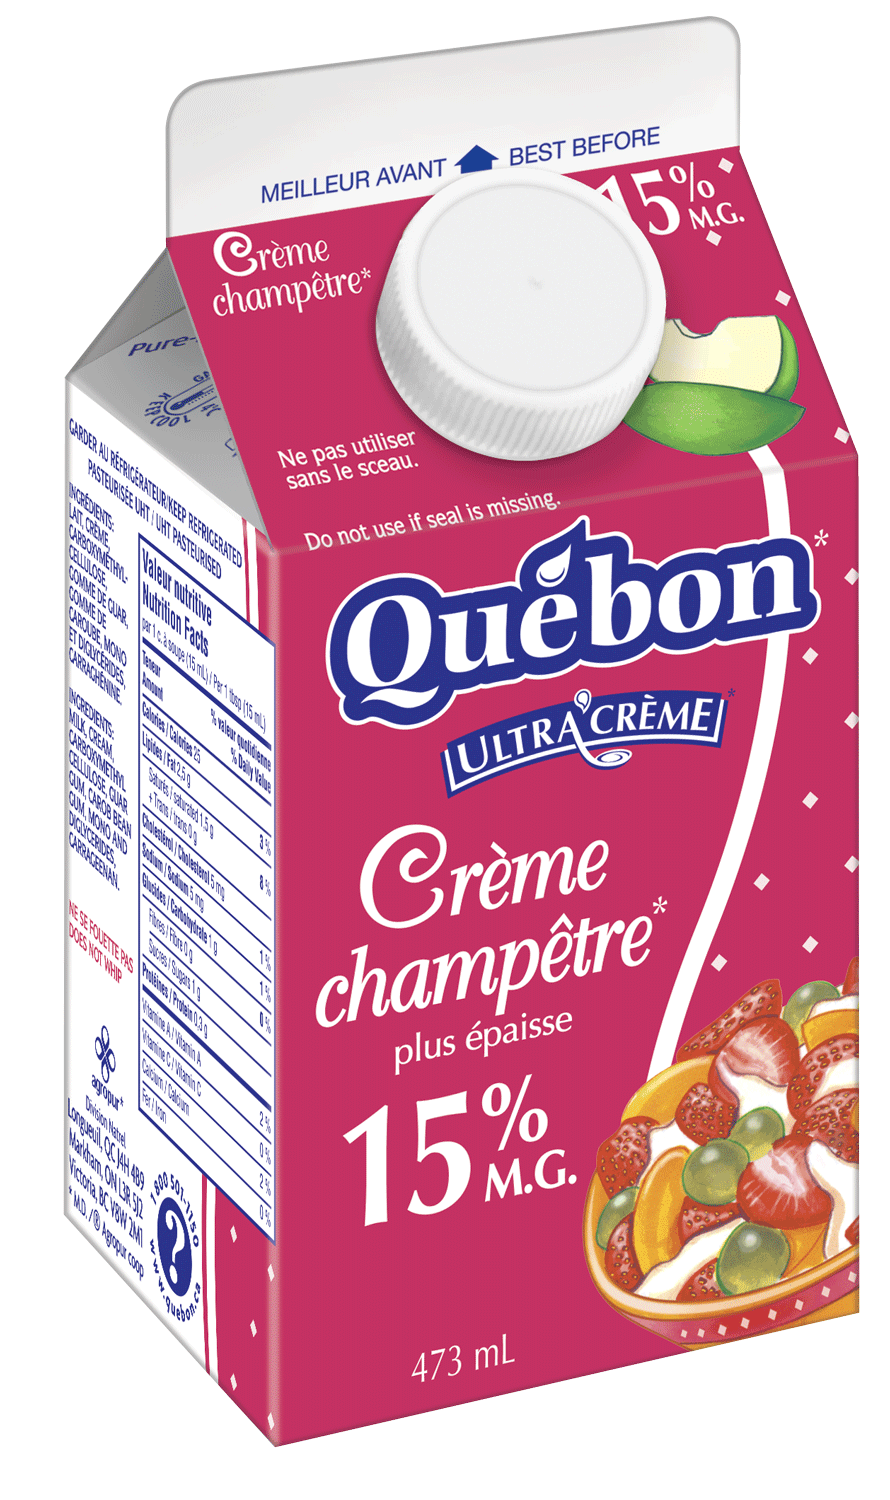 Crème champêtre 15 % | Québon